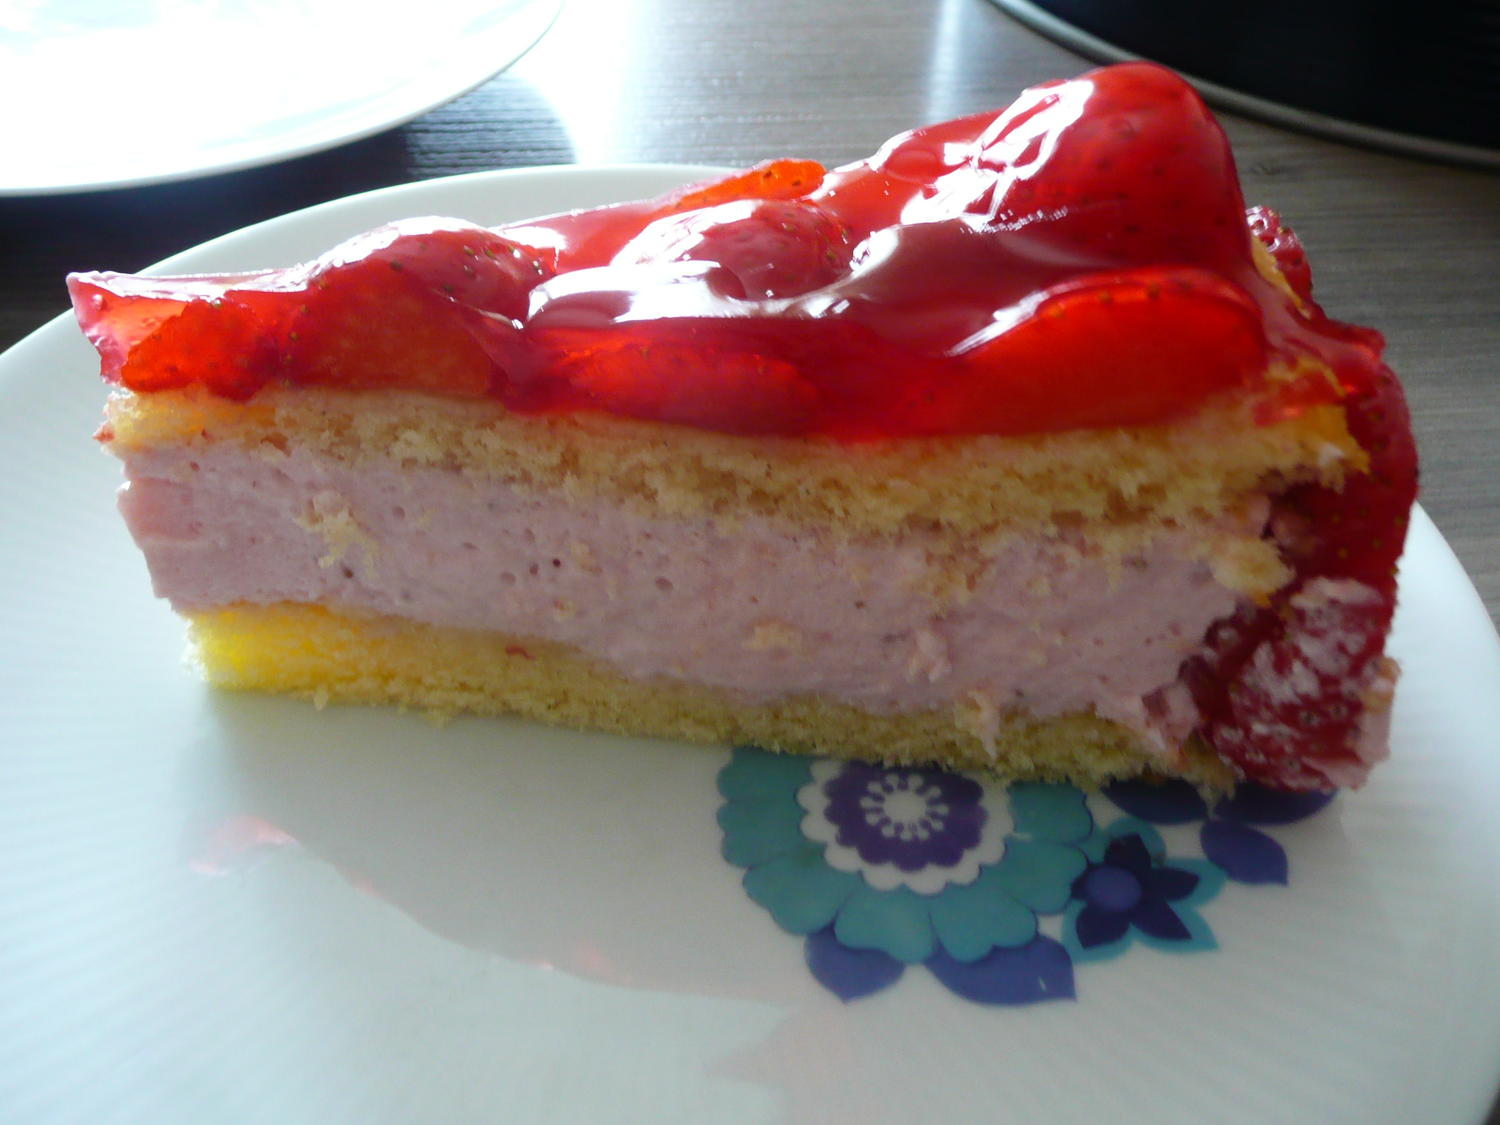 24+ großartig Bild Erdbeer Frischkäse Kuchen : Erdbeer - Frischkäse - Torte - Rezept mit Bild - kochbar.de / Der teig ist schnell zusammengerührt und die erdbeeren geben dem kuchen die perfekte, saftige konsistenz.